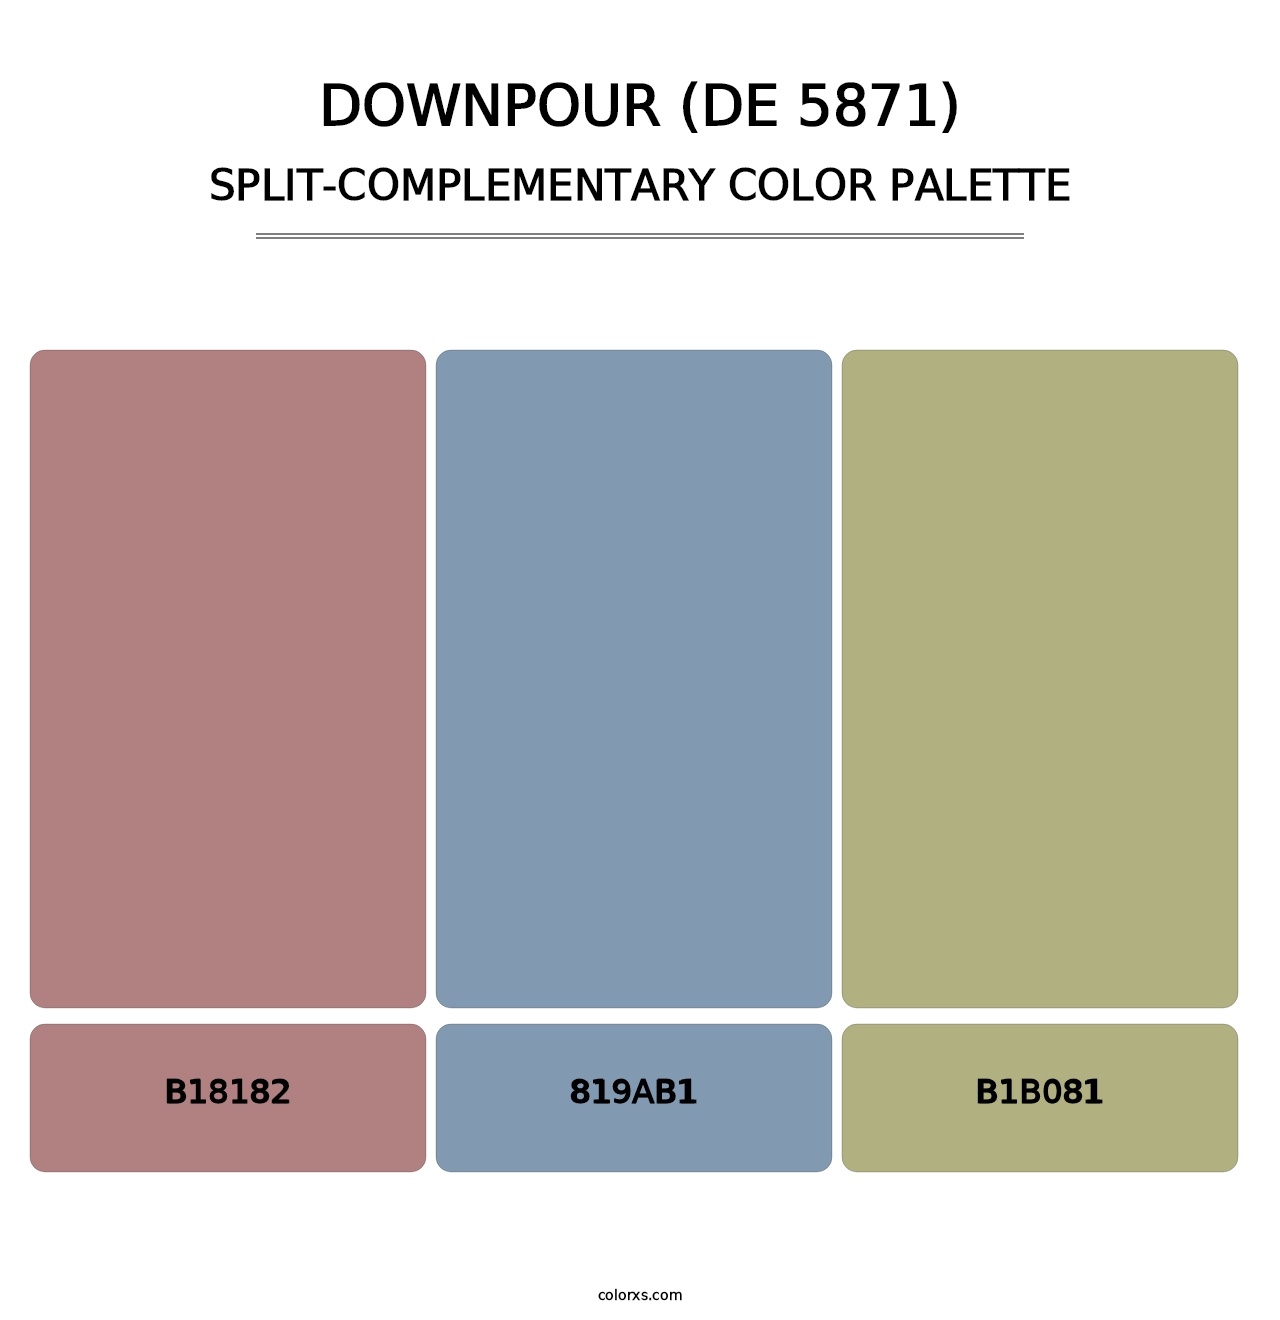 Downpour (DE 5871) - Split-Complementary Color Palette